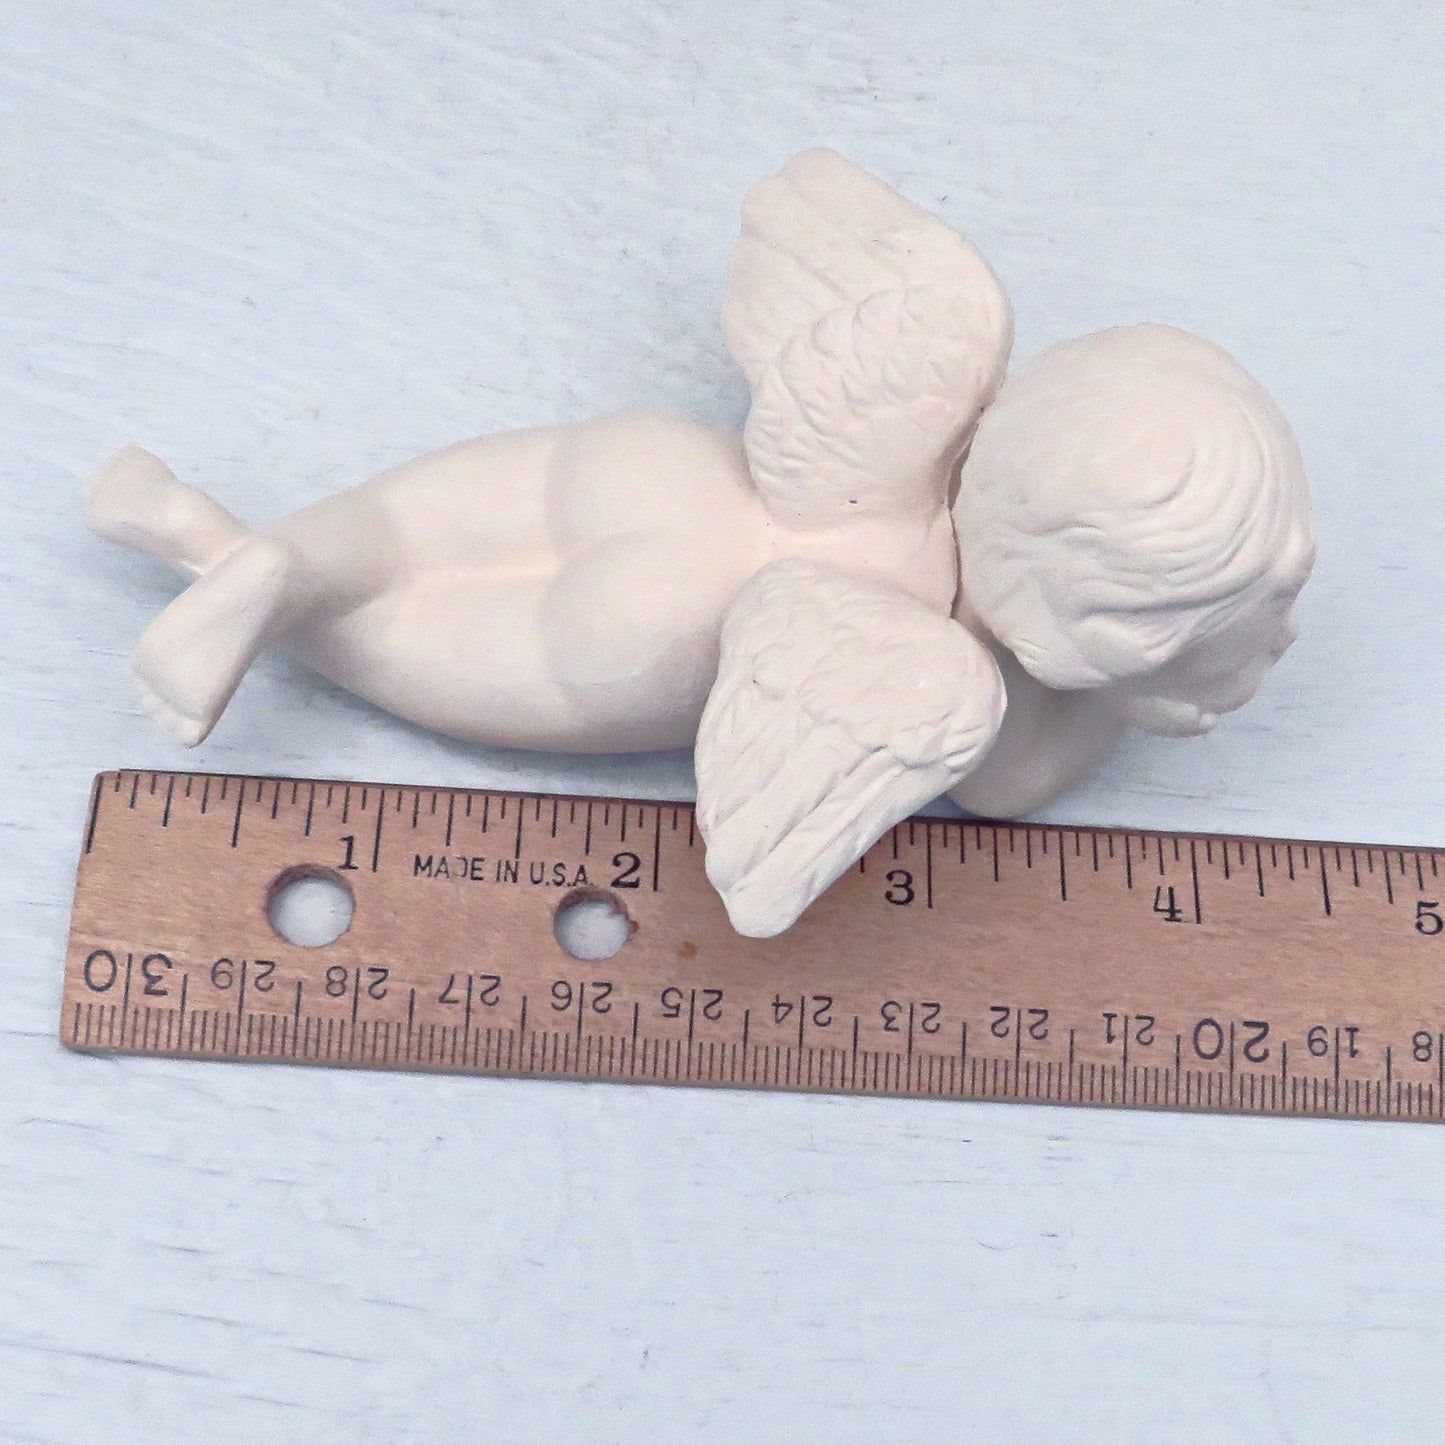 Unpainted Ceramic Angel / Ceramic Bisque / Ready to Paint  / Cherub Angel / Angel Figurine / Ceramic Angel Statue / Ceramics To Paint